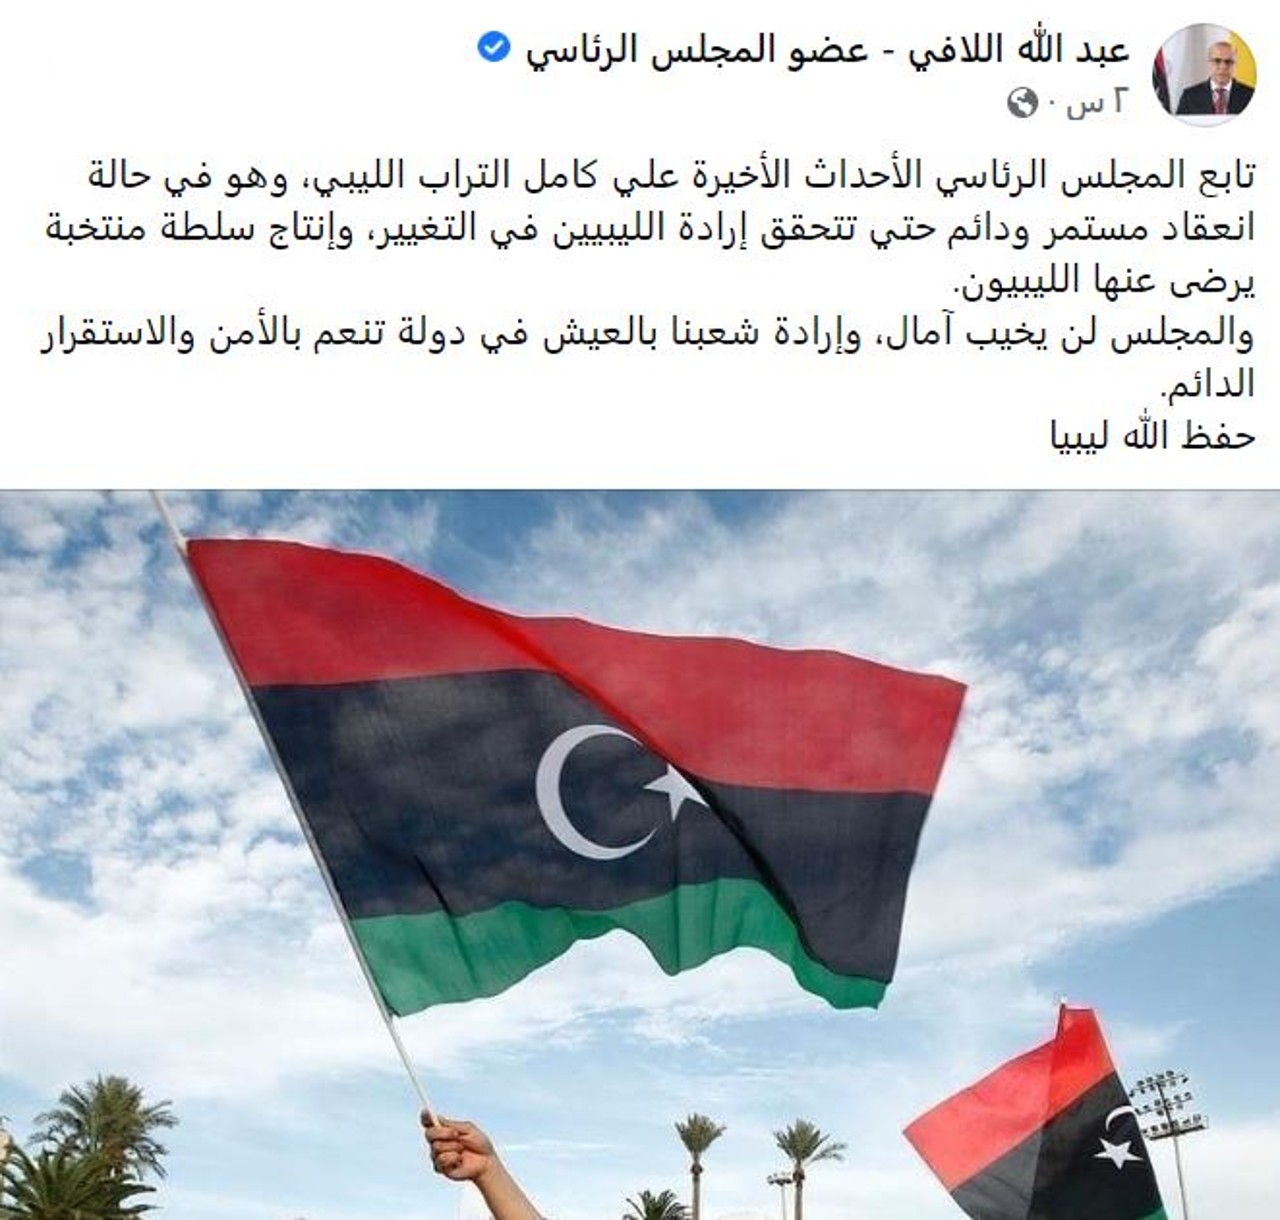 عبدالله اللافي عضو المجلس الرئاسي الليبي عبر حسابه على فيسبوك